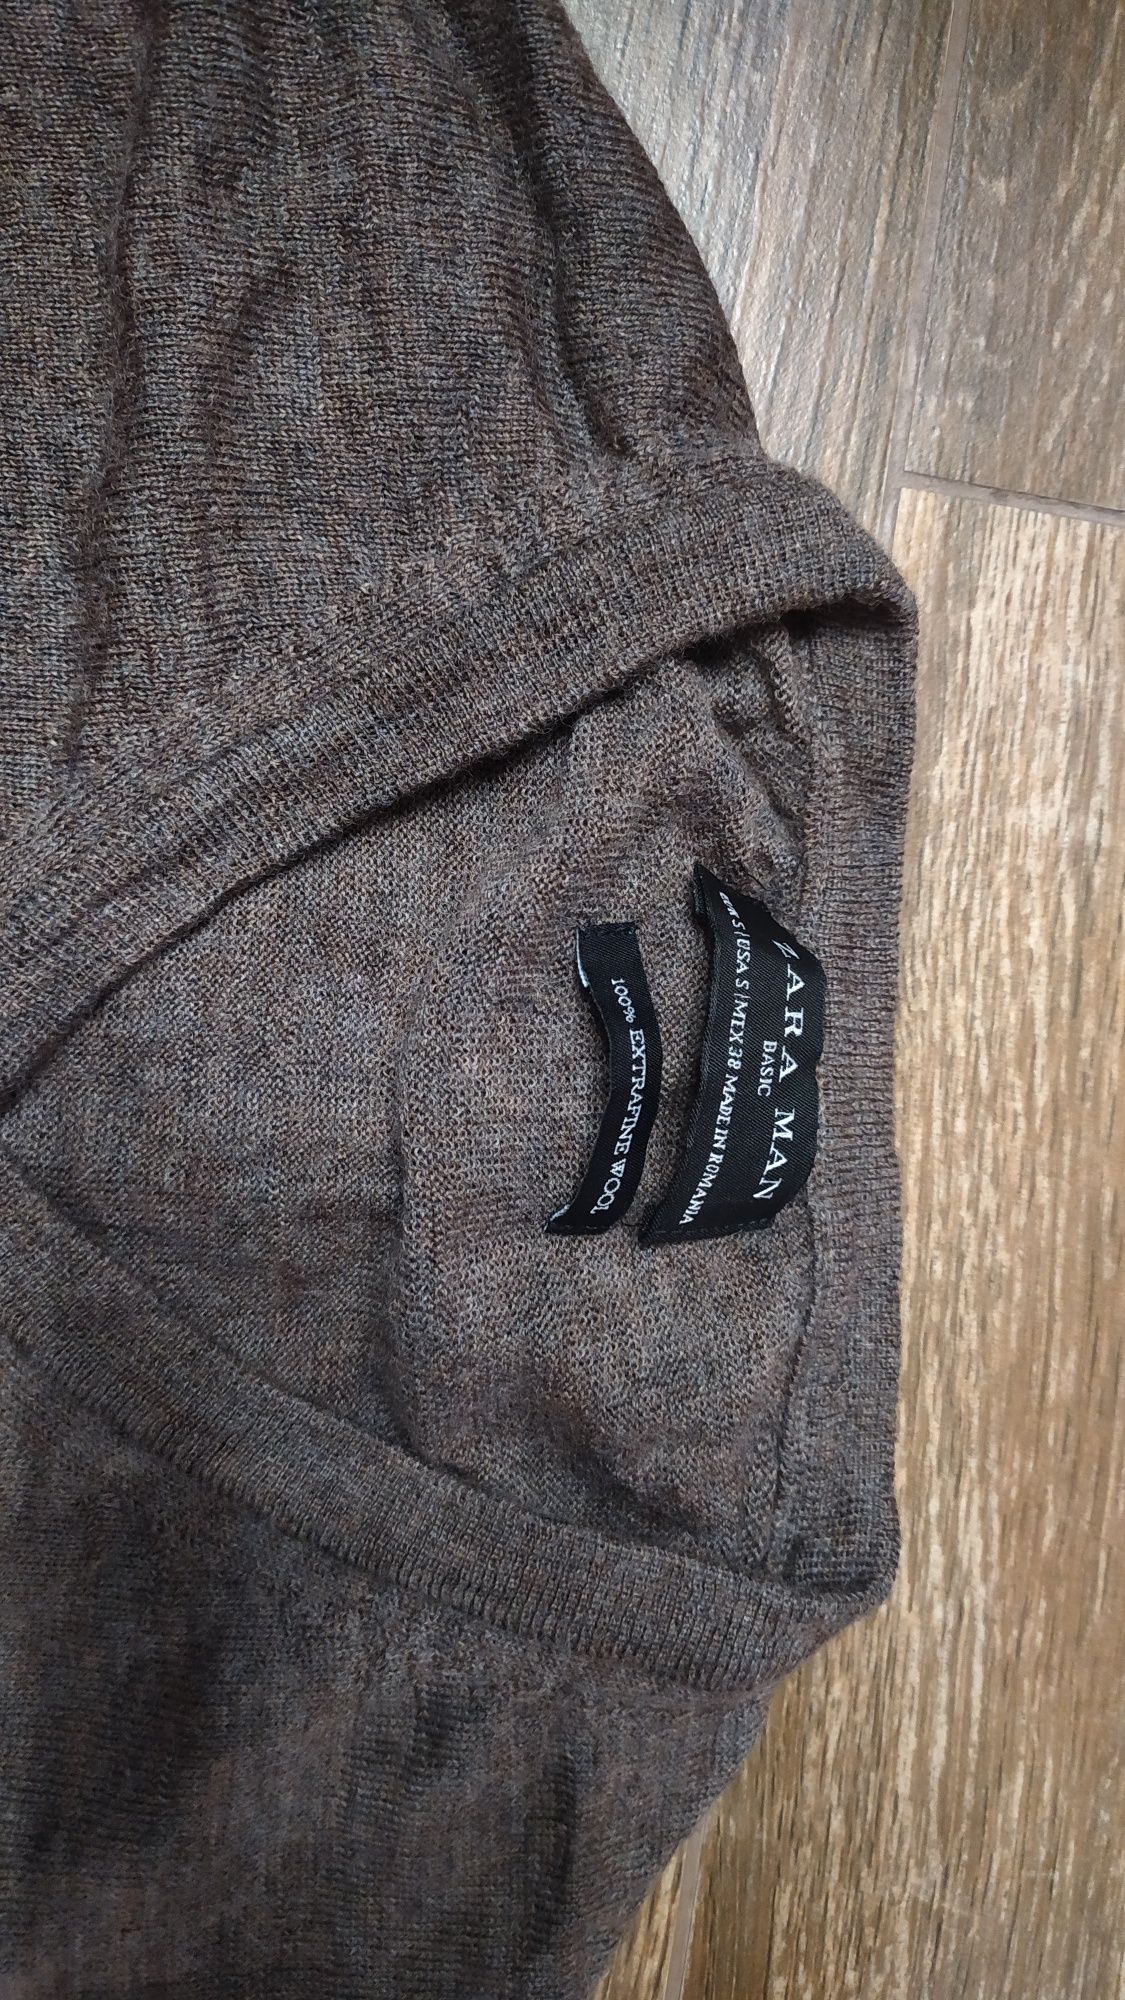 Sweterek męski S Zara MEN 100% extrafine wełna brązowy cienki